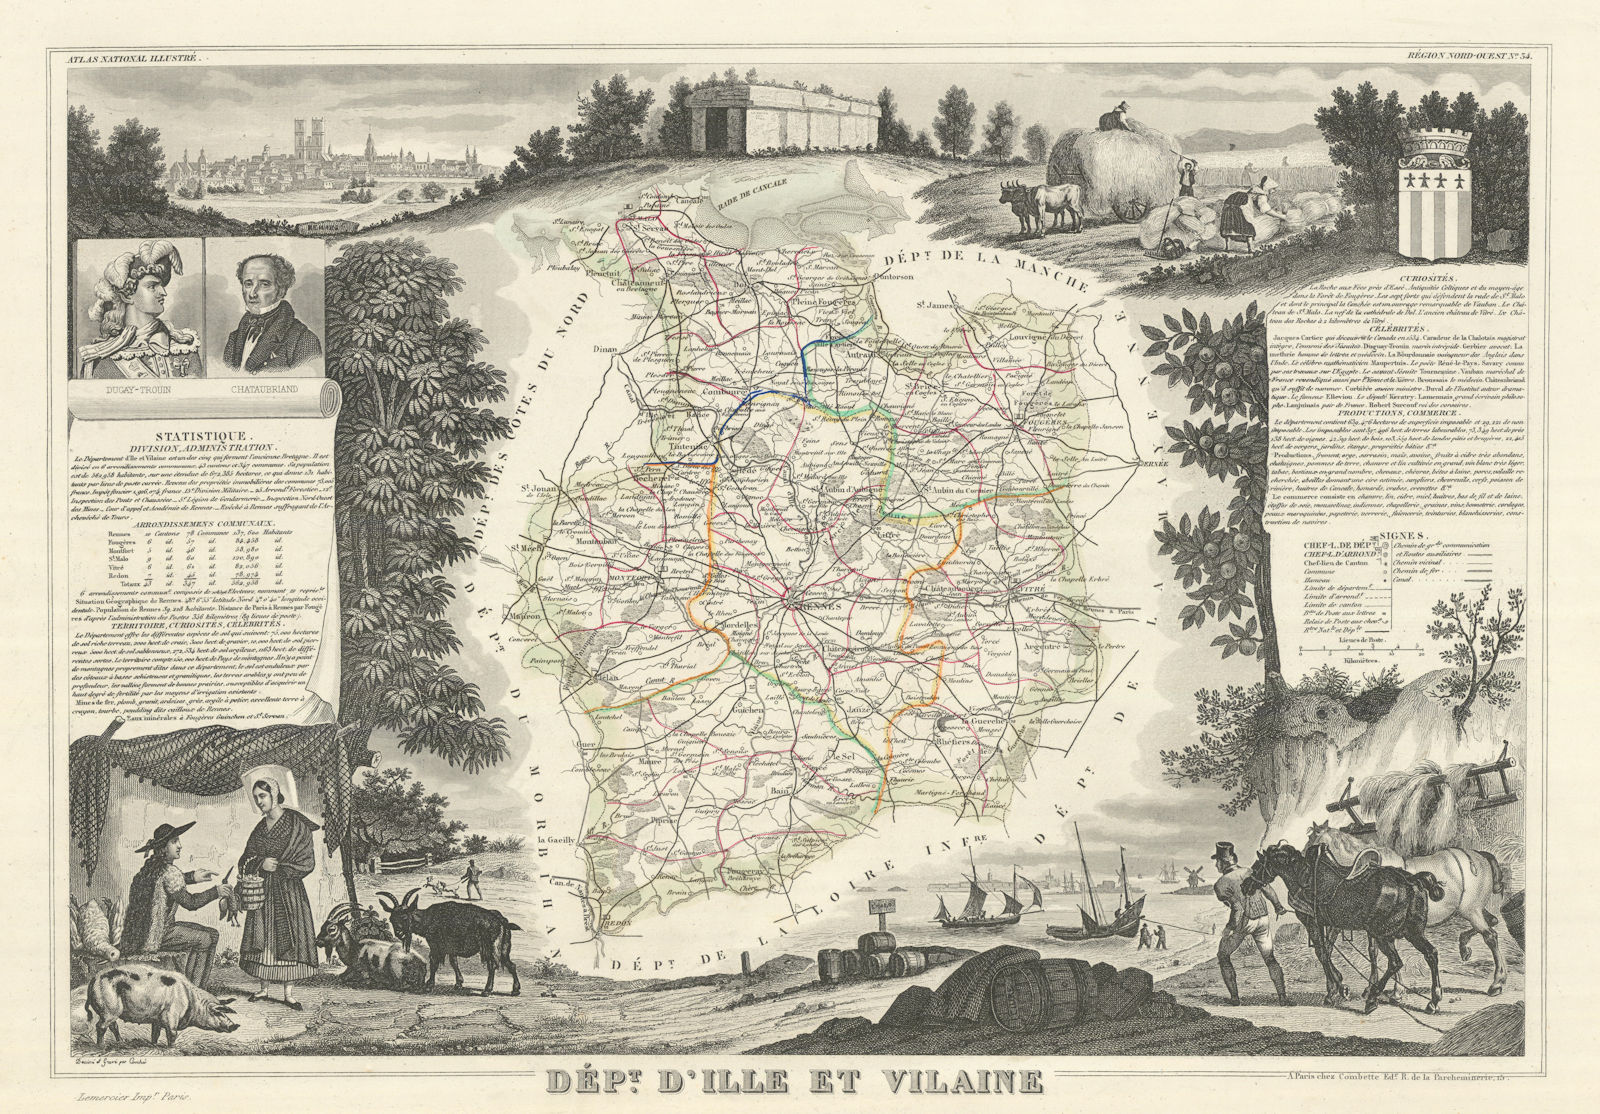 Associate Product Département d'ILLE-ET-VILAINE. Decorative antique map/carte. LEVASSEUR 1856